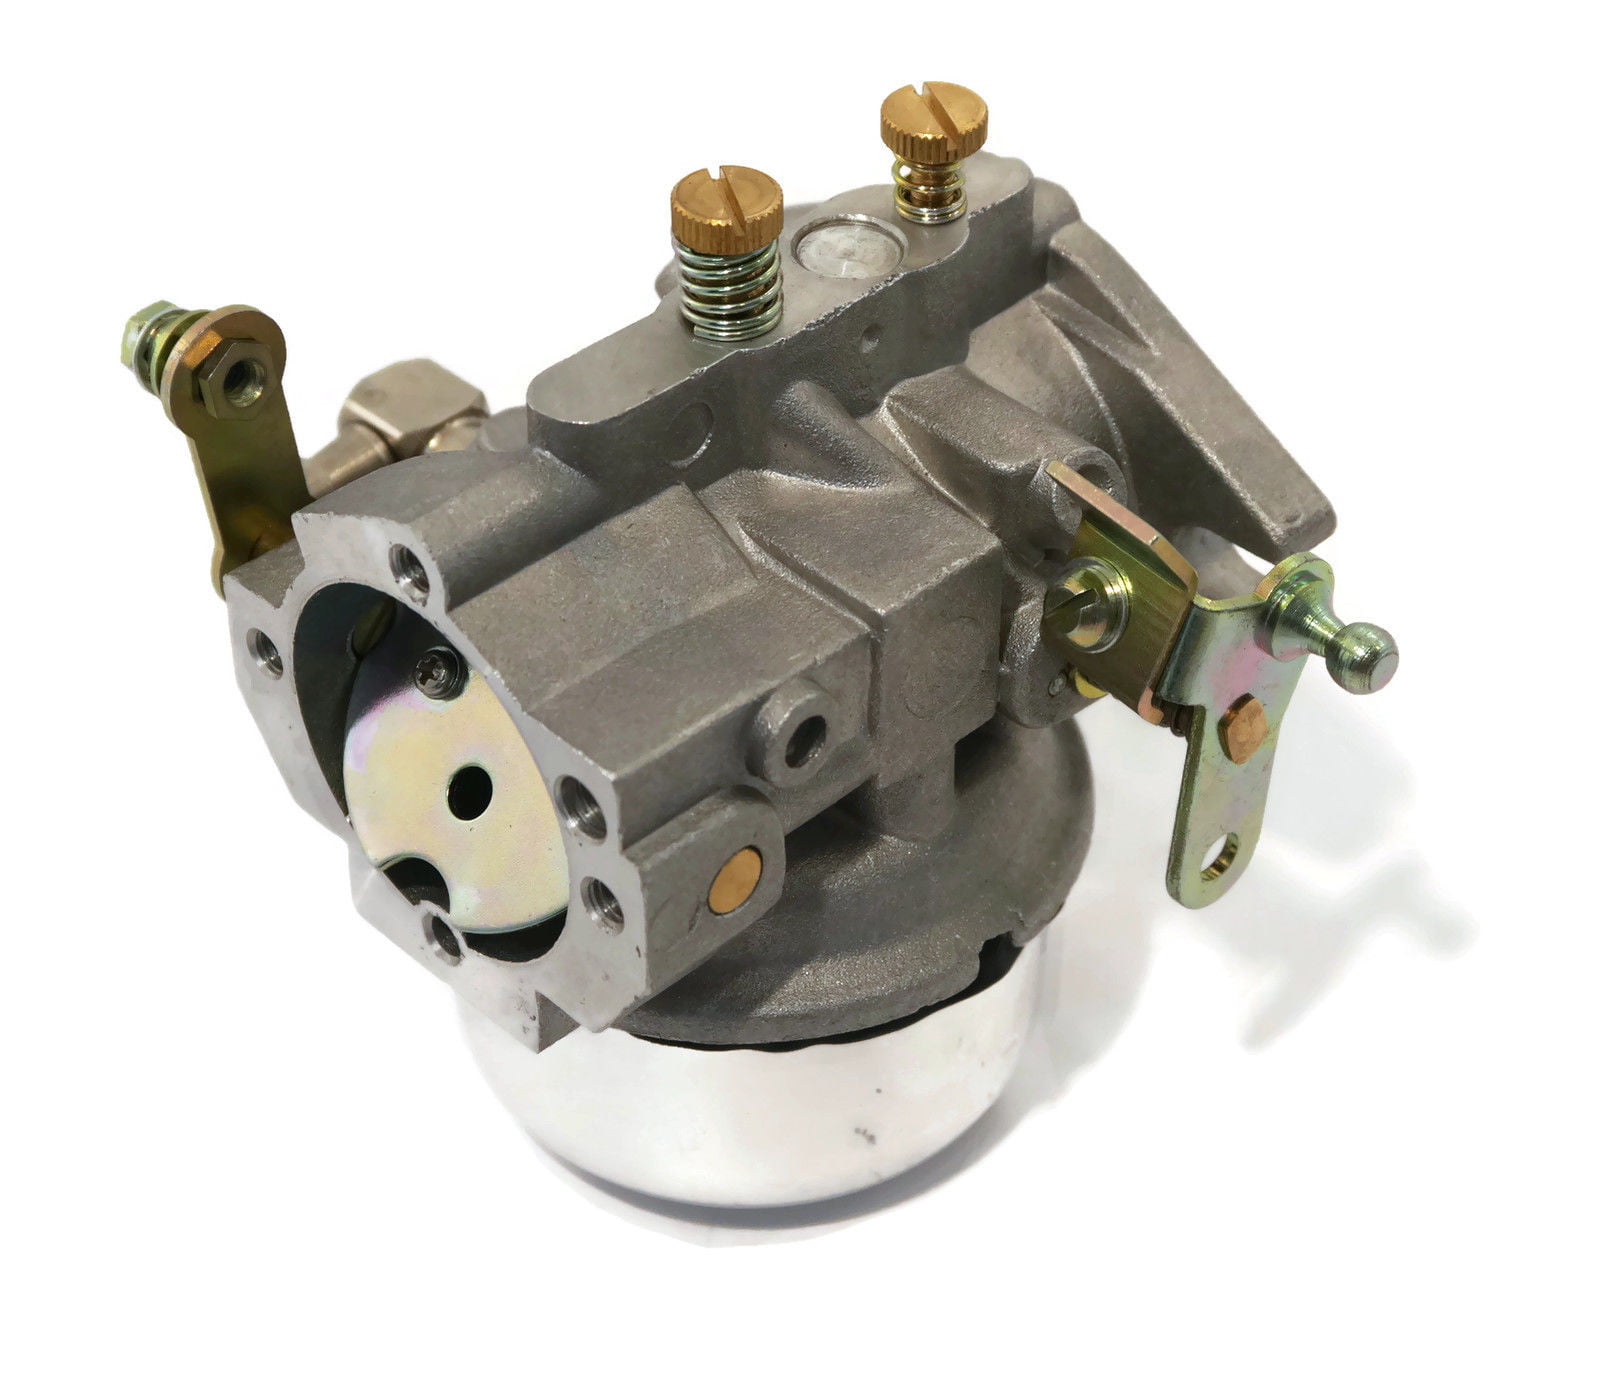 Carburetor Carb w/Gasket Fits John Deere MIA10308 AM36146 23 HP Lawnmower Engine